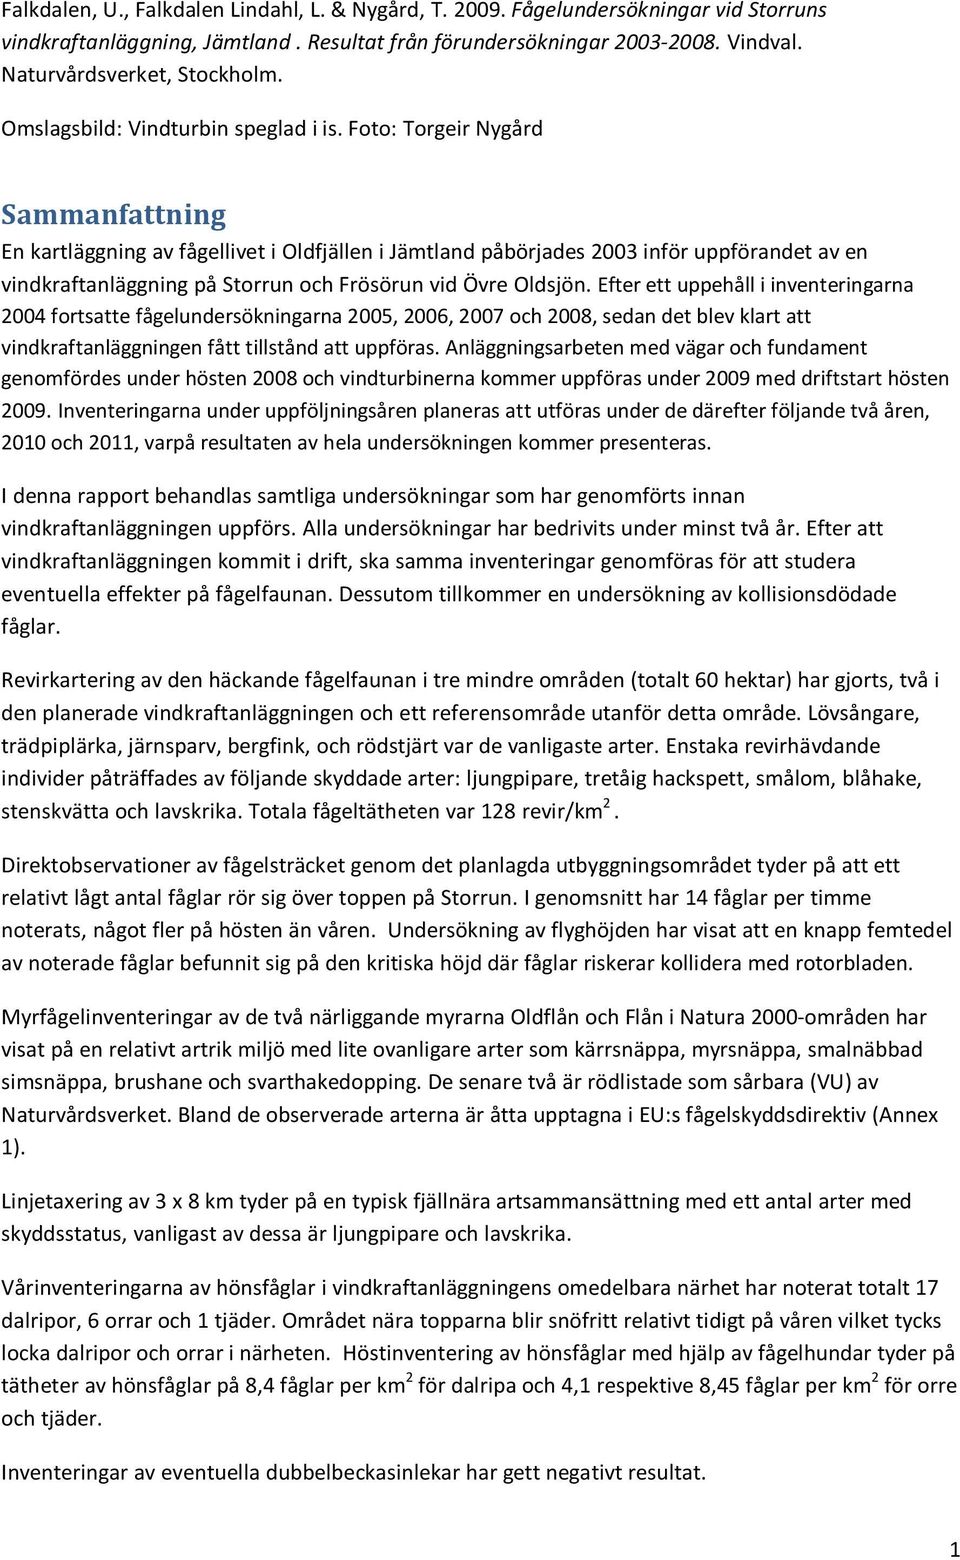 Foto: Torgeir Nygård Sammanfattning En kartläggning av fågellivet i Oldfjällen i Jämtland påbörjades 2003 inför uppförandet av en vindkraftanläggning på Storrun och Frösörun vid Övre Oldsjön.